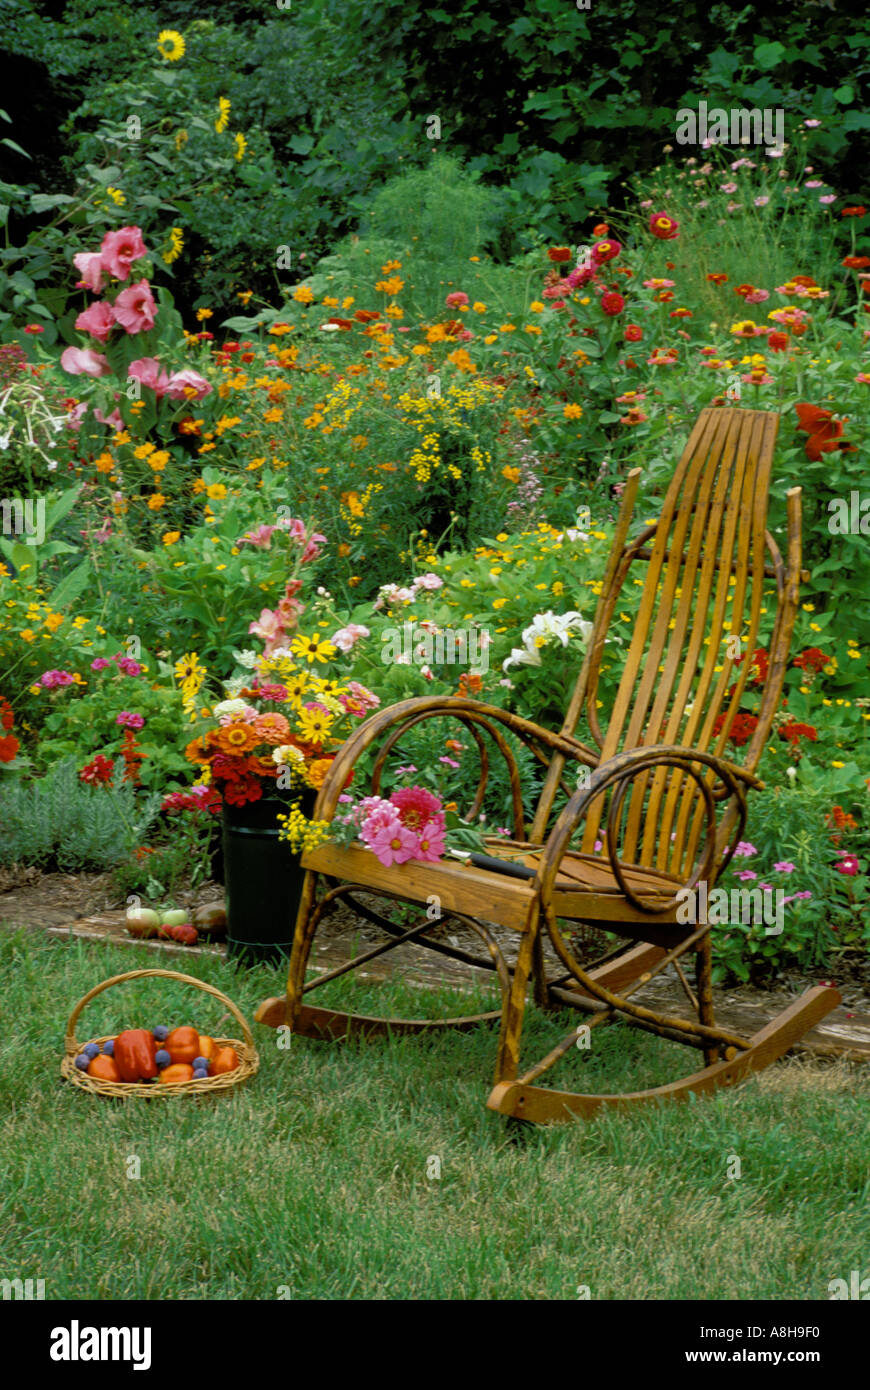 Omas Ort--Bugholz Schaukelstuhl im Blumengarten mit einem geflochtenen Korb  voll mit frischem Obst und frischen Schnittblumen Stockfotografie - Alamy